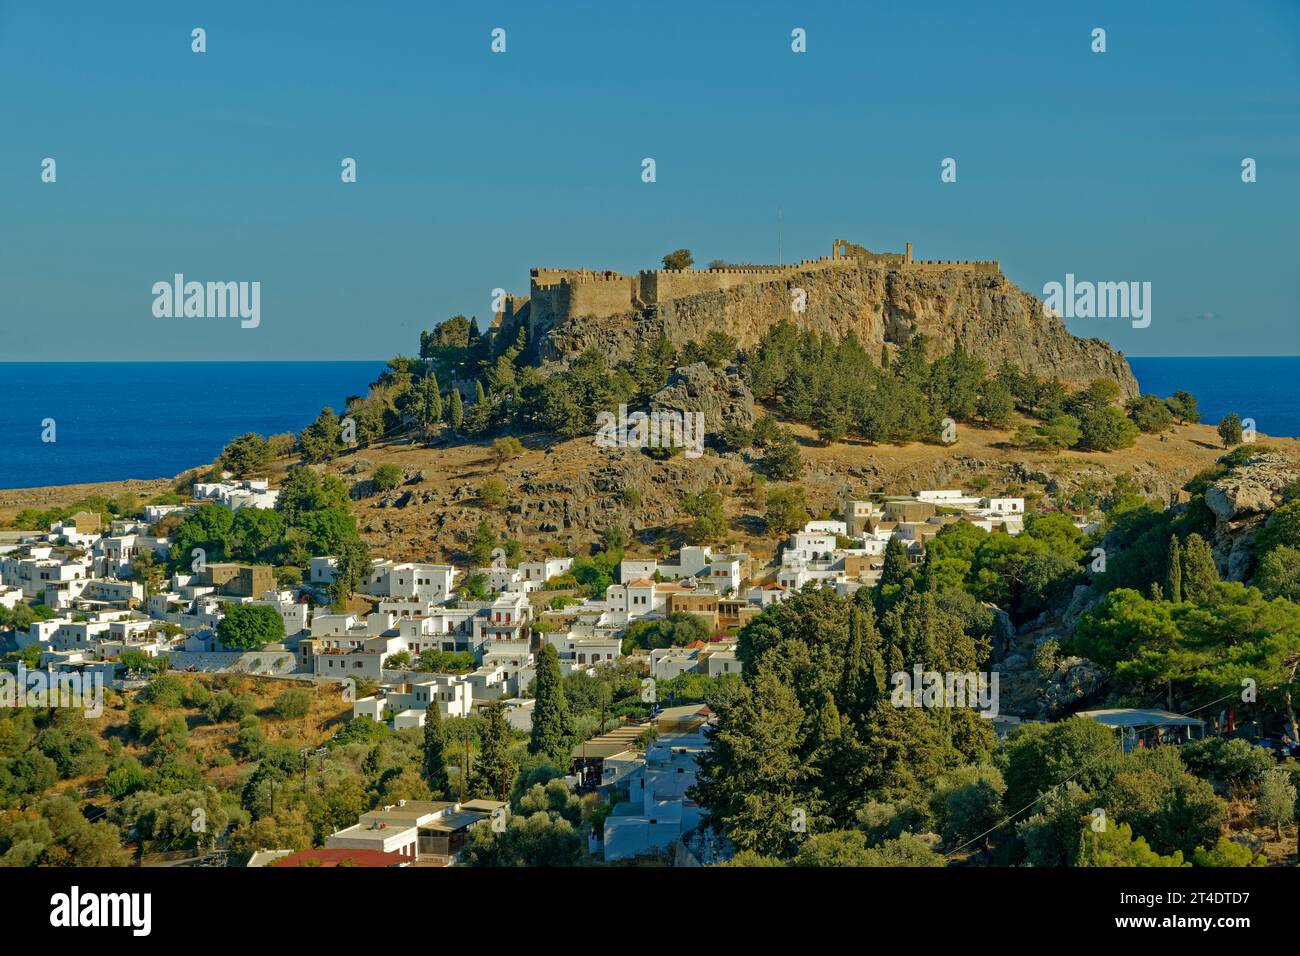 La città di Lindos sull'isola di Rodi con l'Acropoli di Lindos sul suo sito sopraelevato. Foto Stock